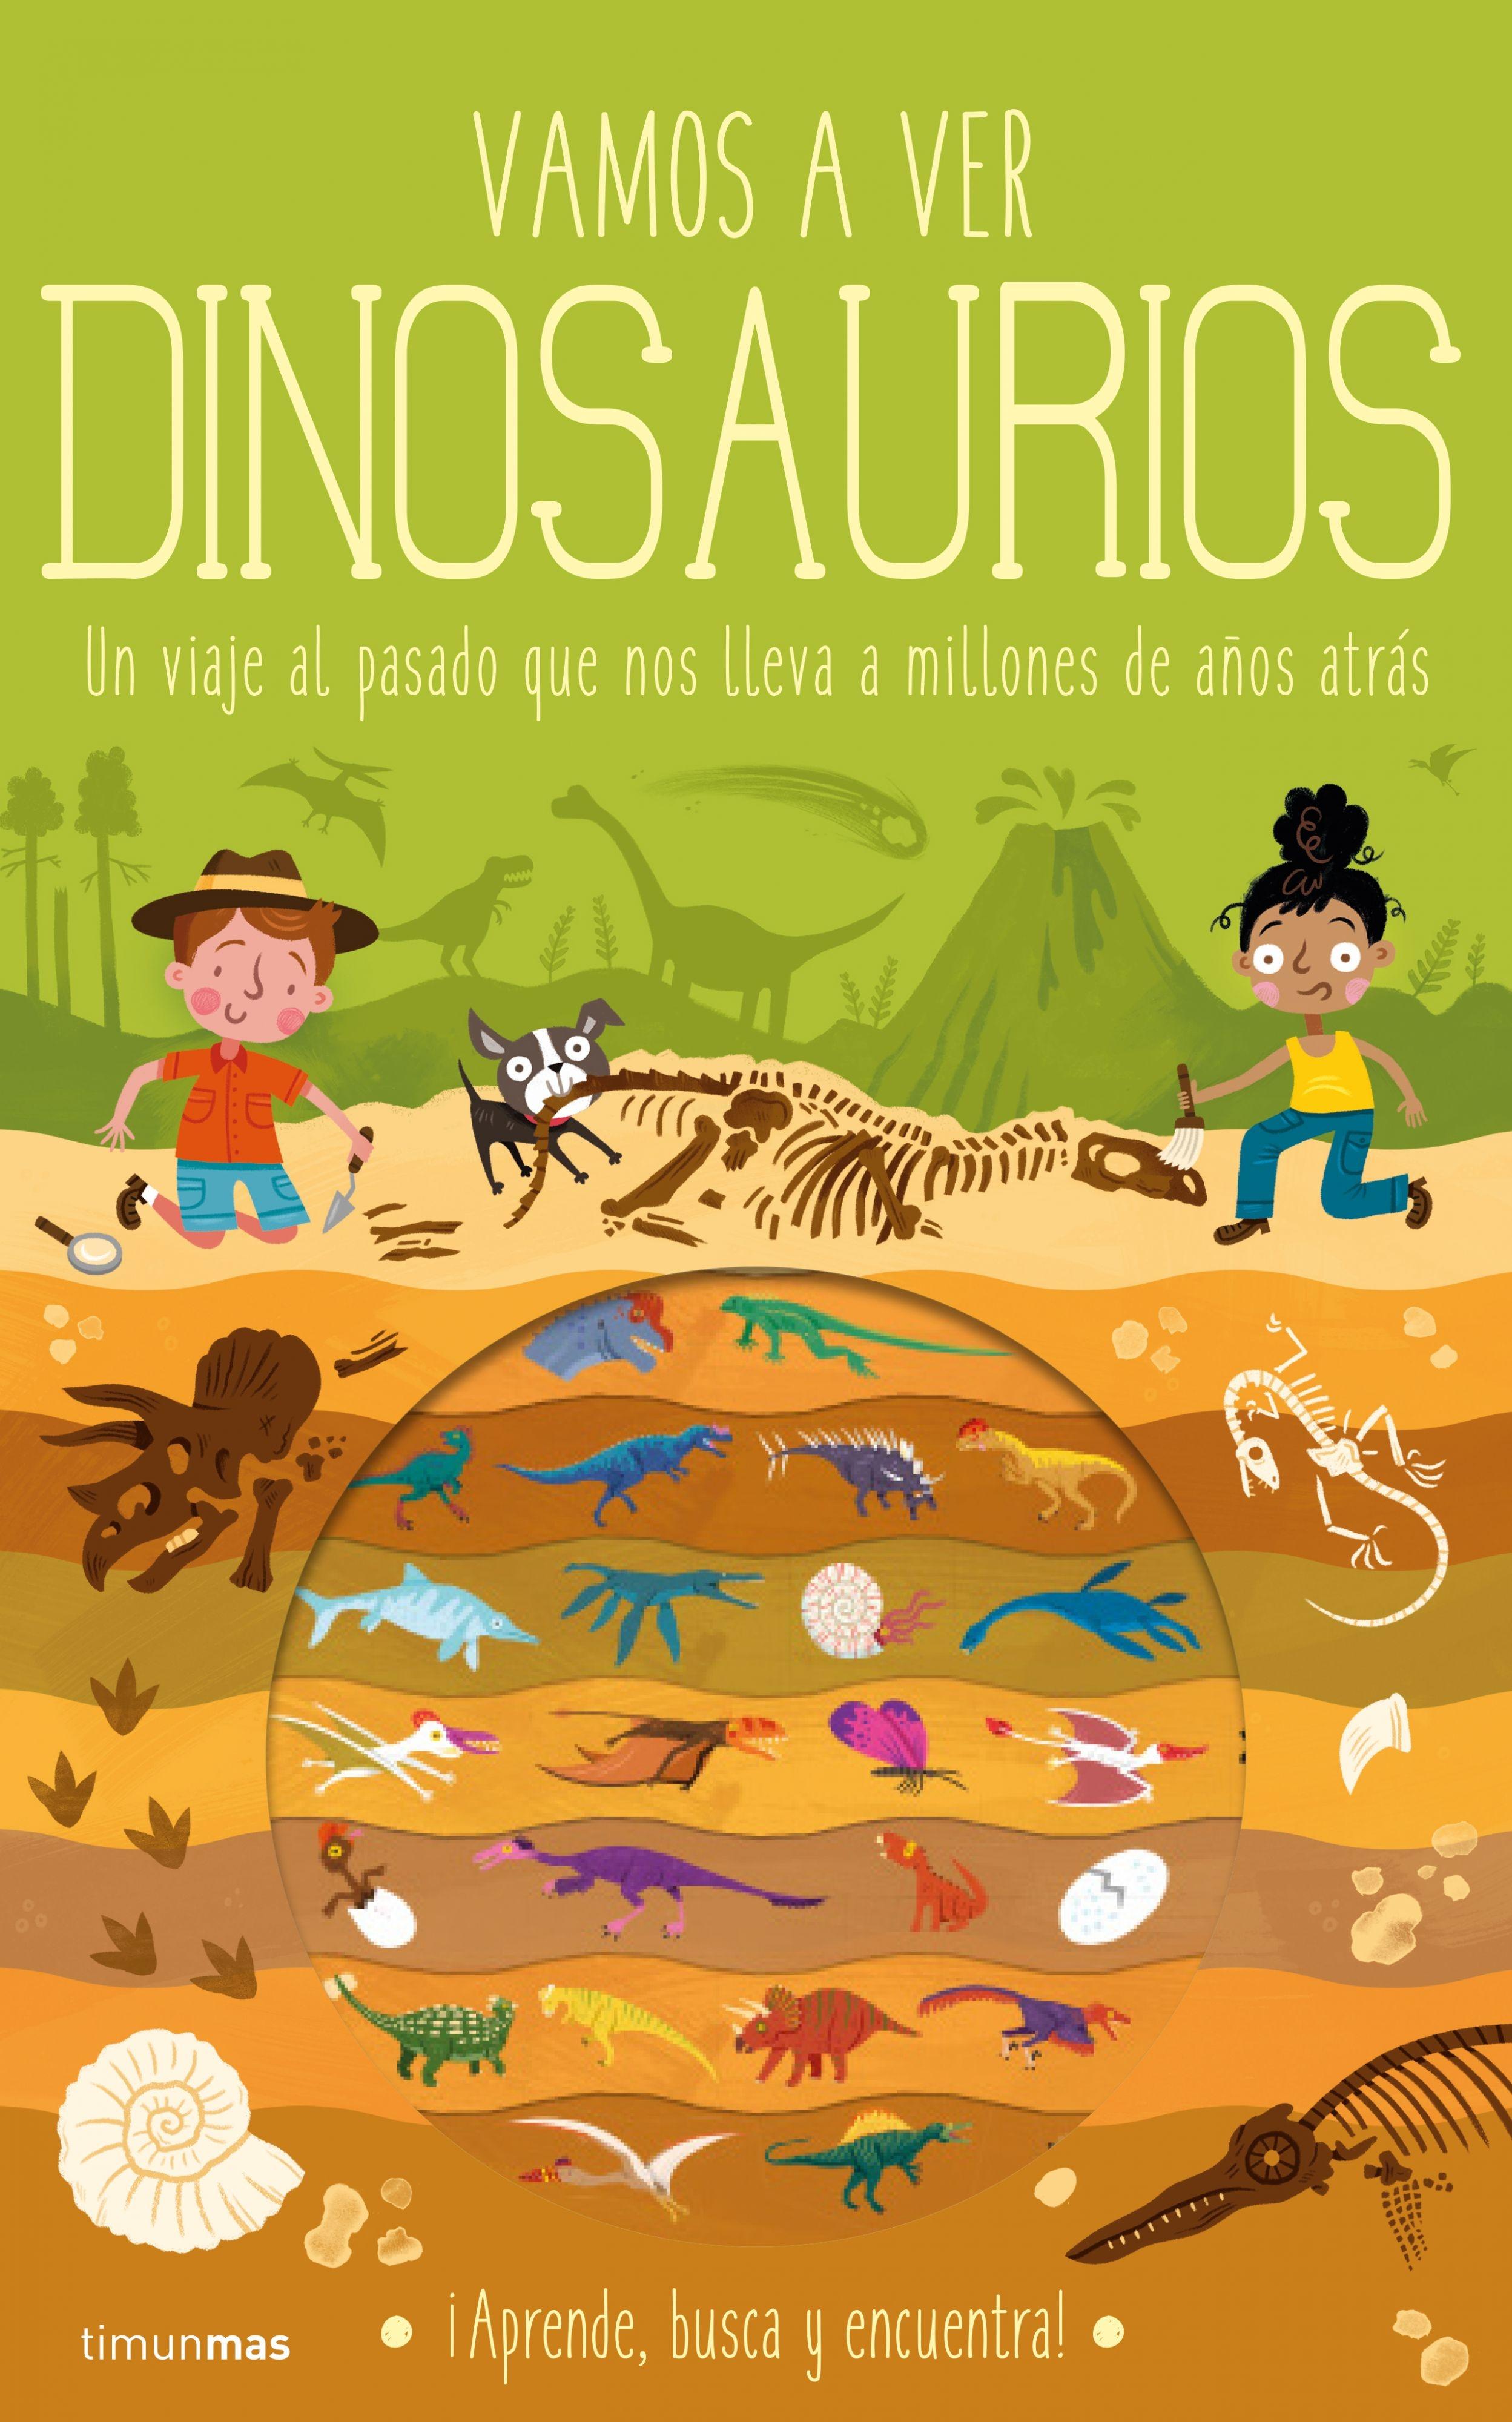 Vamos a ver dinosaurios "Un viaje al pasado que nos lleva a millones de años atrás". 